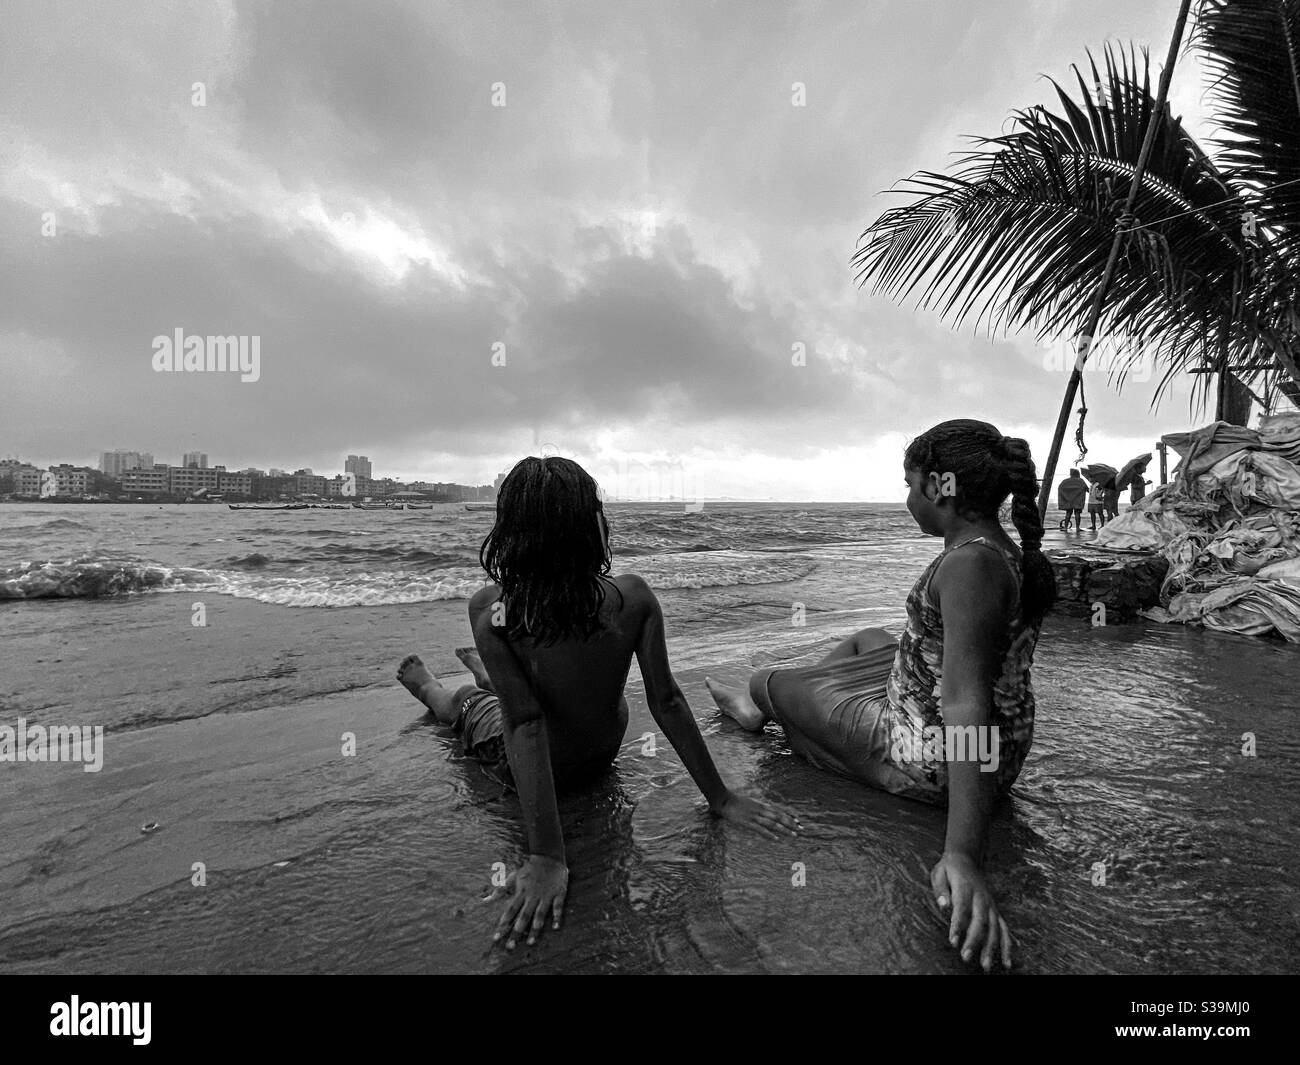 Kids enjoying high tide during monsoon in mumbai. Stock Photo